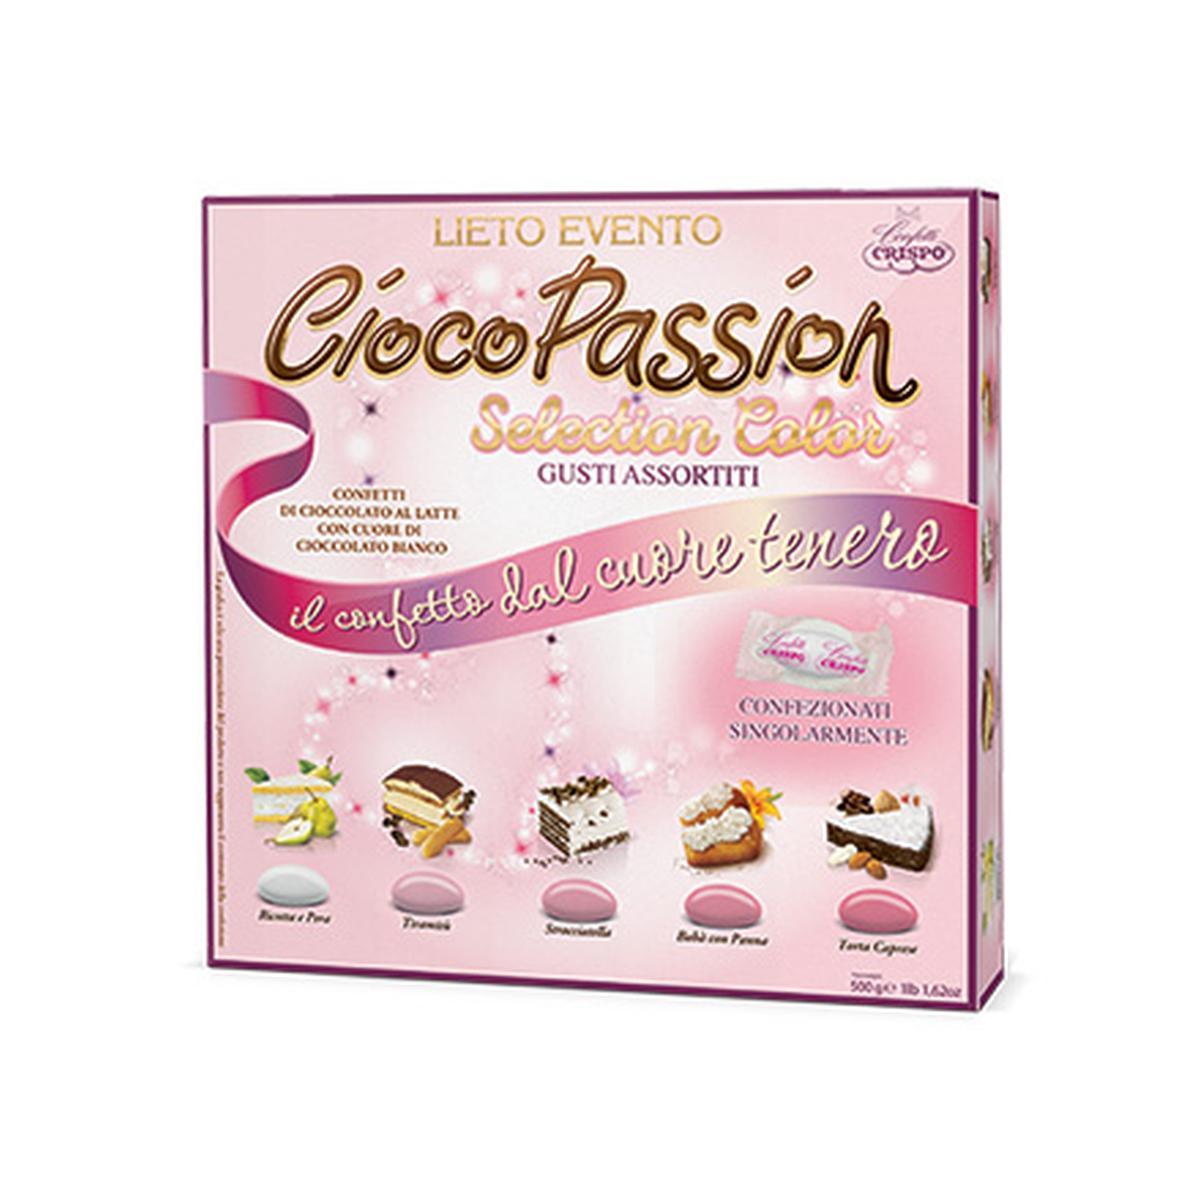 Crispo Confetti Selection Color CiocoPassion  Rosa 500g